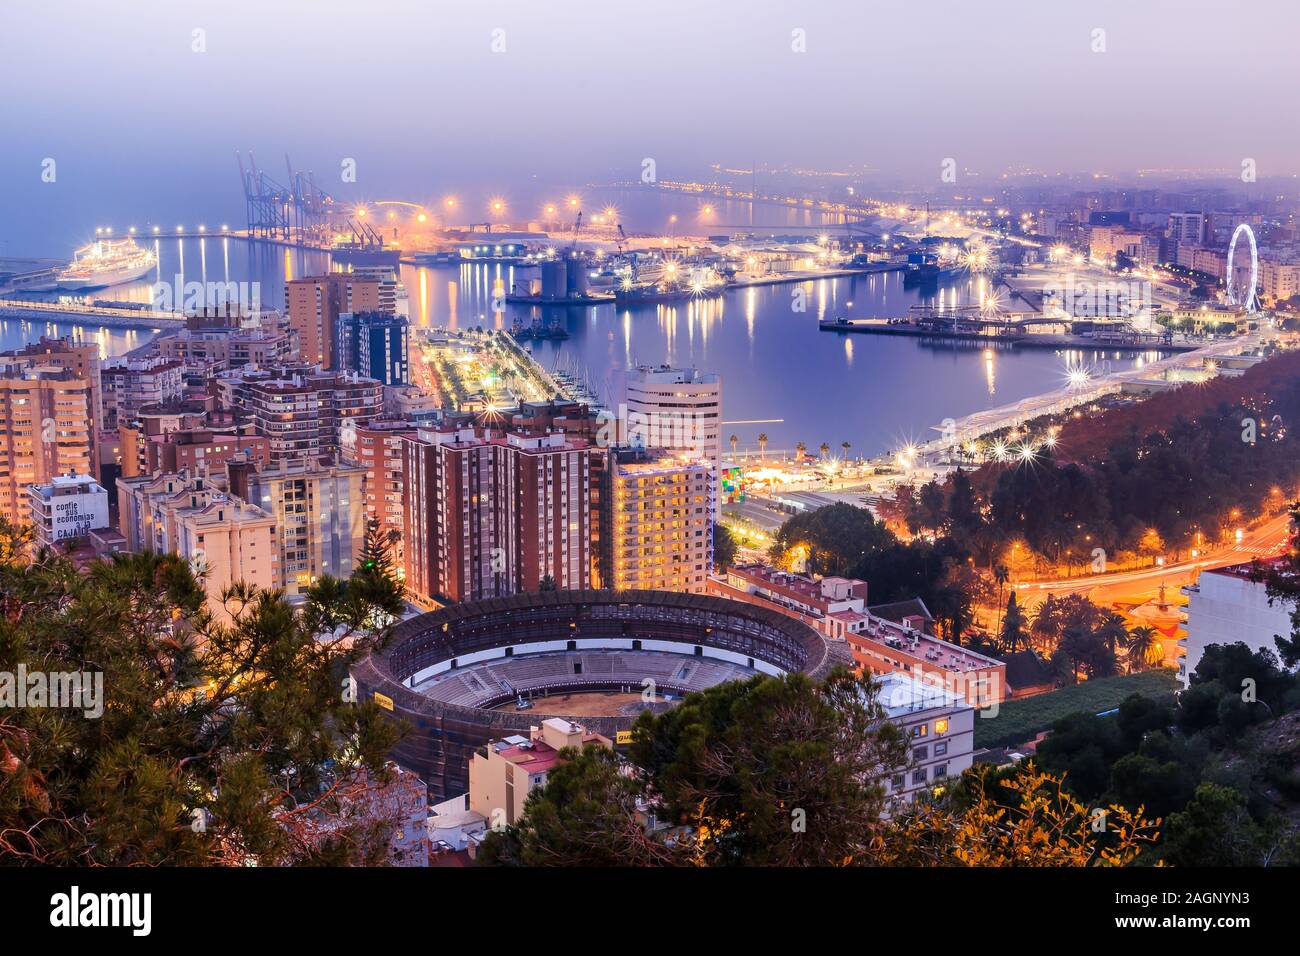 Nachtaufnahme von Málaga an der spanischen Mittelmeerküste. Blick auf die Stadt an der Costa del Sol mit beleuchtetem Hafen, Bäumen, Straßenlampen und Riesenrad Stockfoto